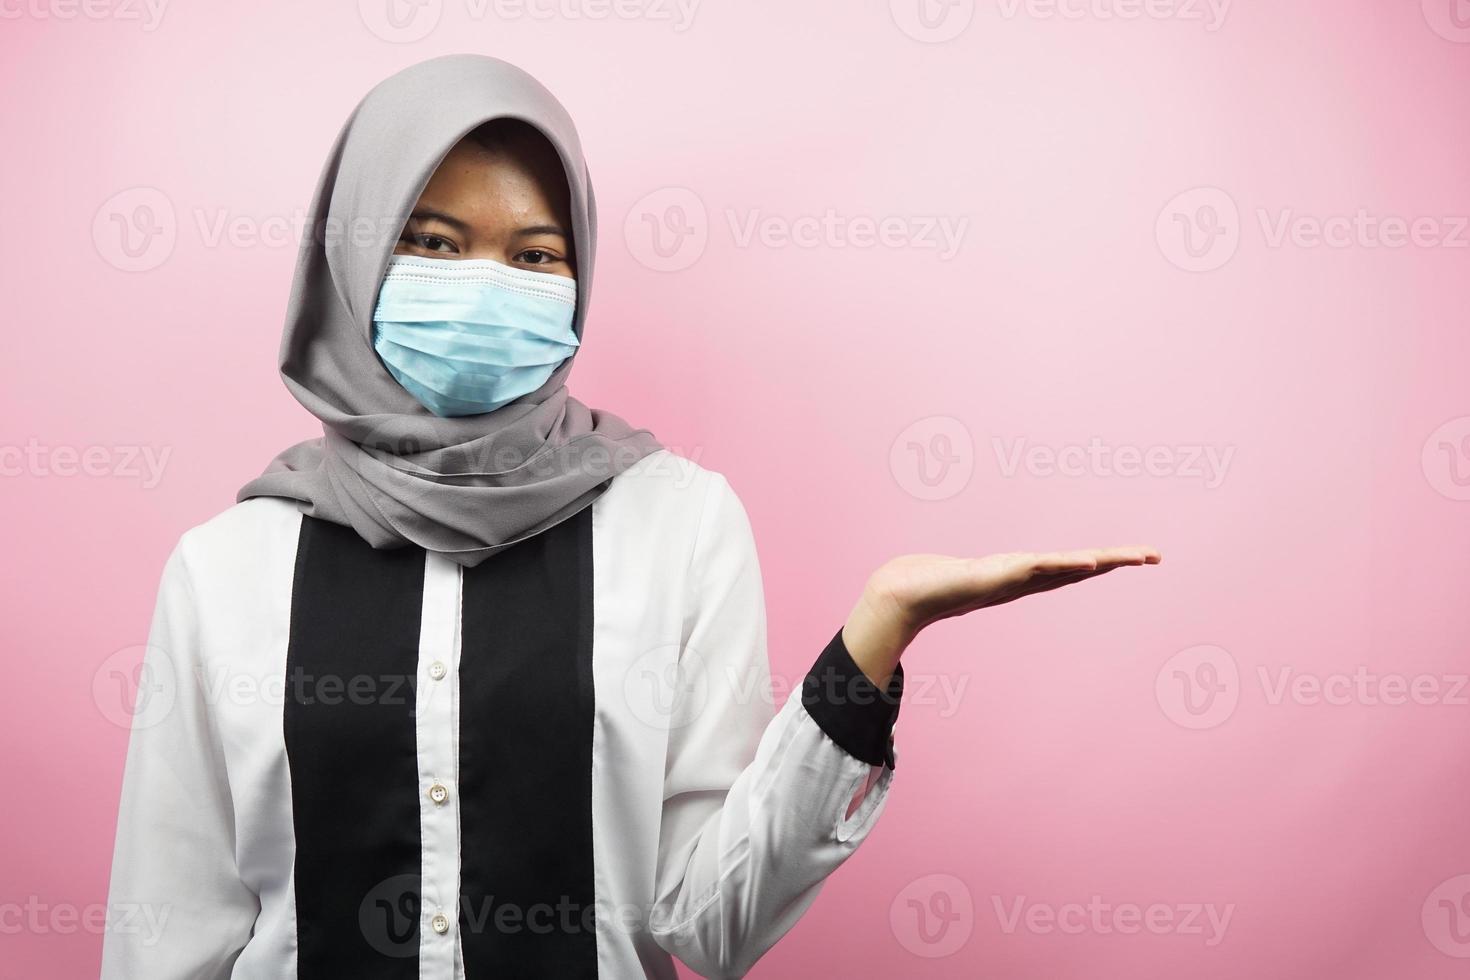 muslimsk kvinna som bär medicinsk mask, händer som presenterar något i tomt utrymme, isolerad på rosa bakgrund foto